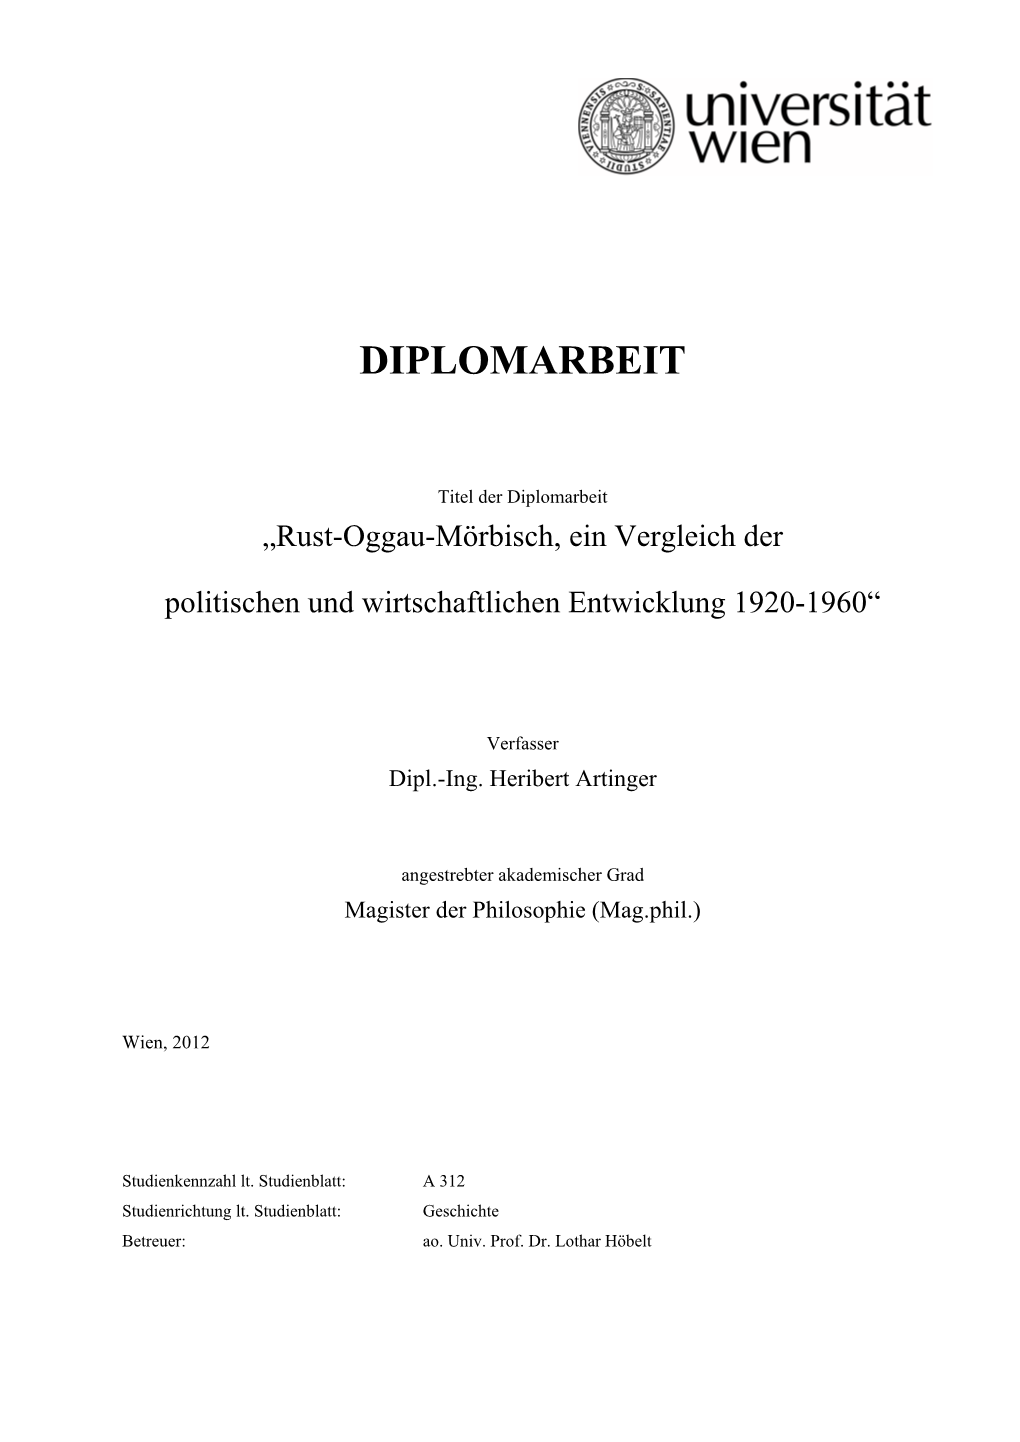 Rust-Oggau-Mörbisch, Ein Vergleich Der Politischen Und Wirtschaftlichen Entwicklung, 1920 – 1960“